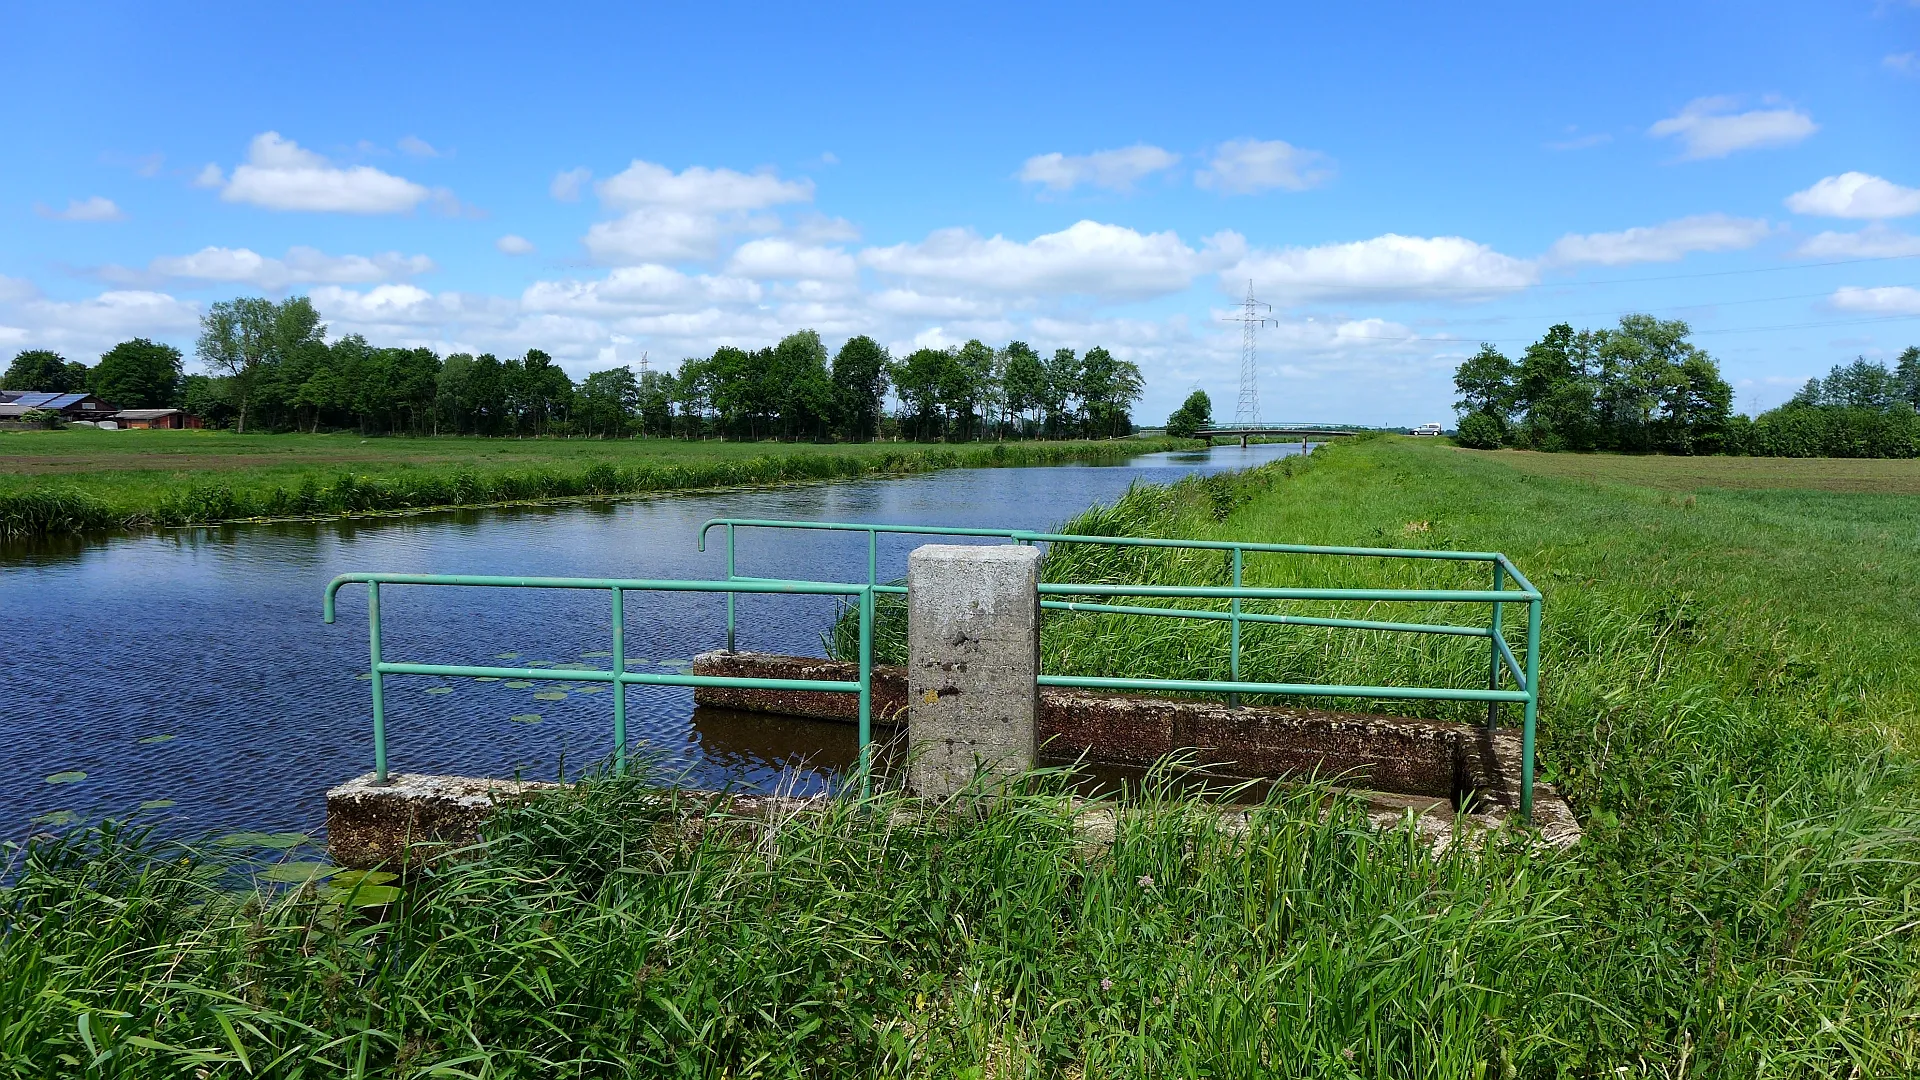 Photo showing: Fluß Mehe mit einem Siel zur Entwässerung der Weiden am Dorfrand von Abbenseth, Samtgemeinde Börde Lamstedt. Bei Brobergen mündet die Mehe in den Fluß Oste. Aufnahmedatum 2015-06.